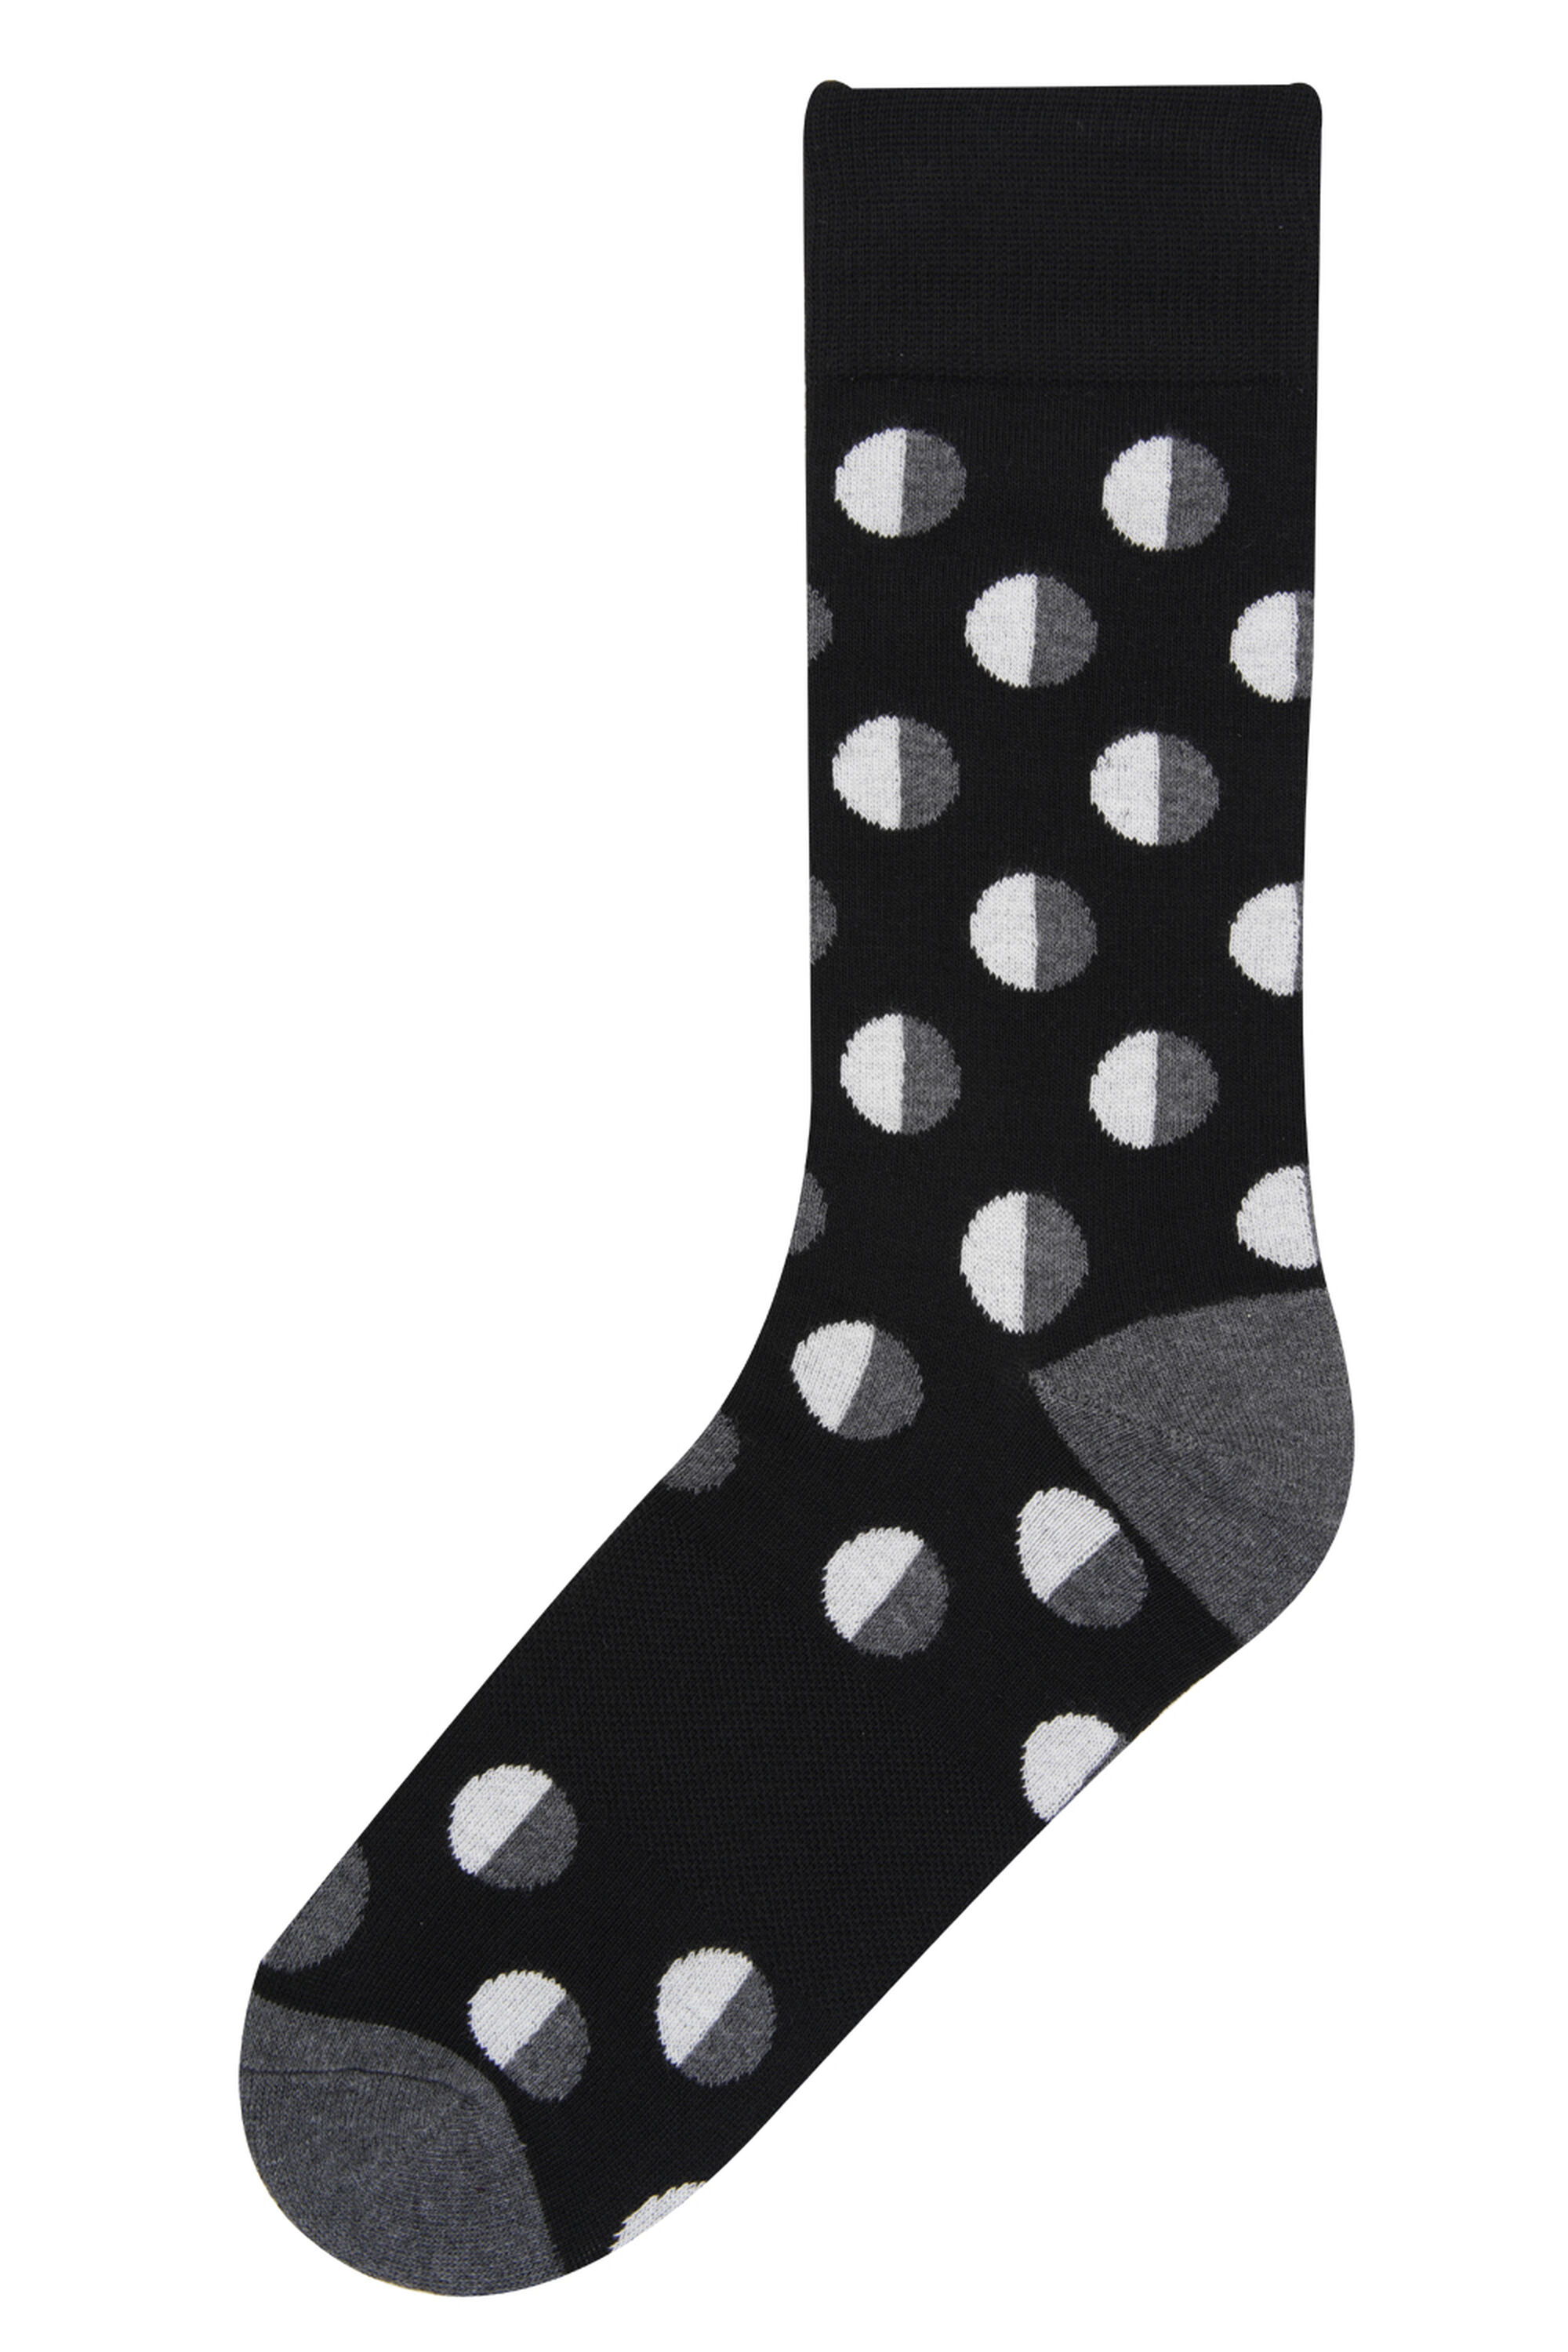 Cata Dot Socks